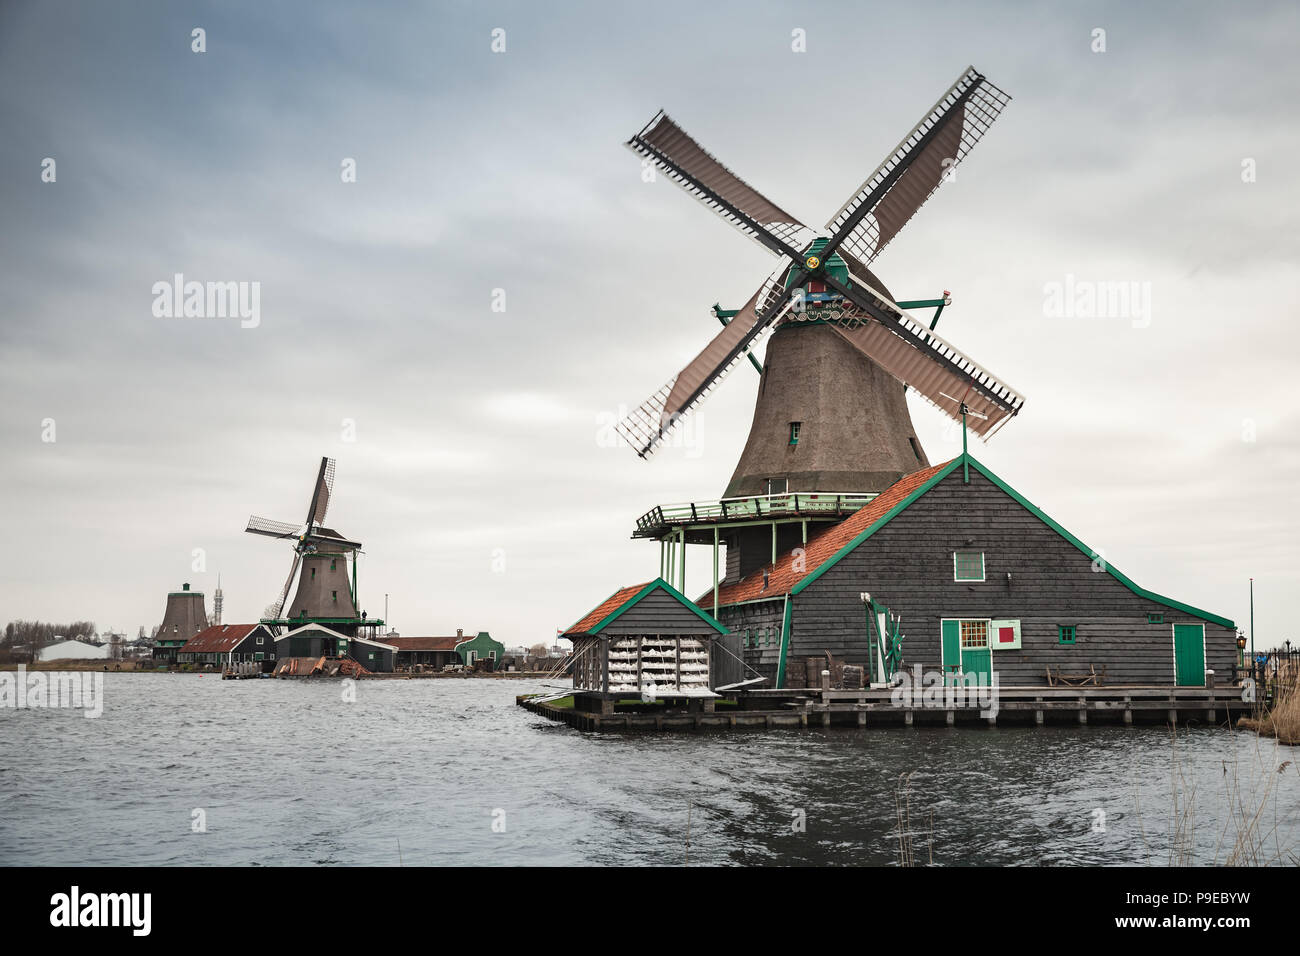 Windmühlen auf Fluss Zaan Küste, Zaanse Schans Stadt, beliebten touristischen Attraktionen der Niederlande. Vorort von Amsterdam Stockfoto